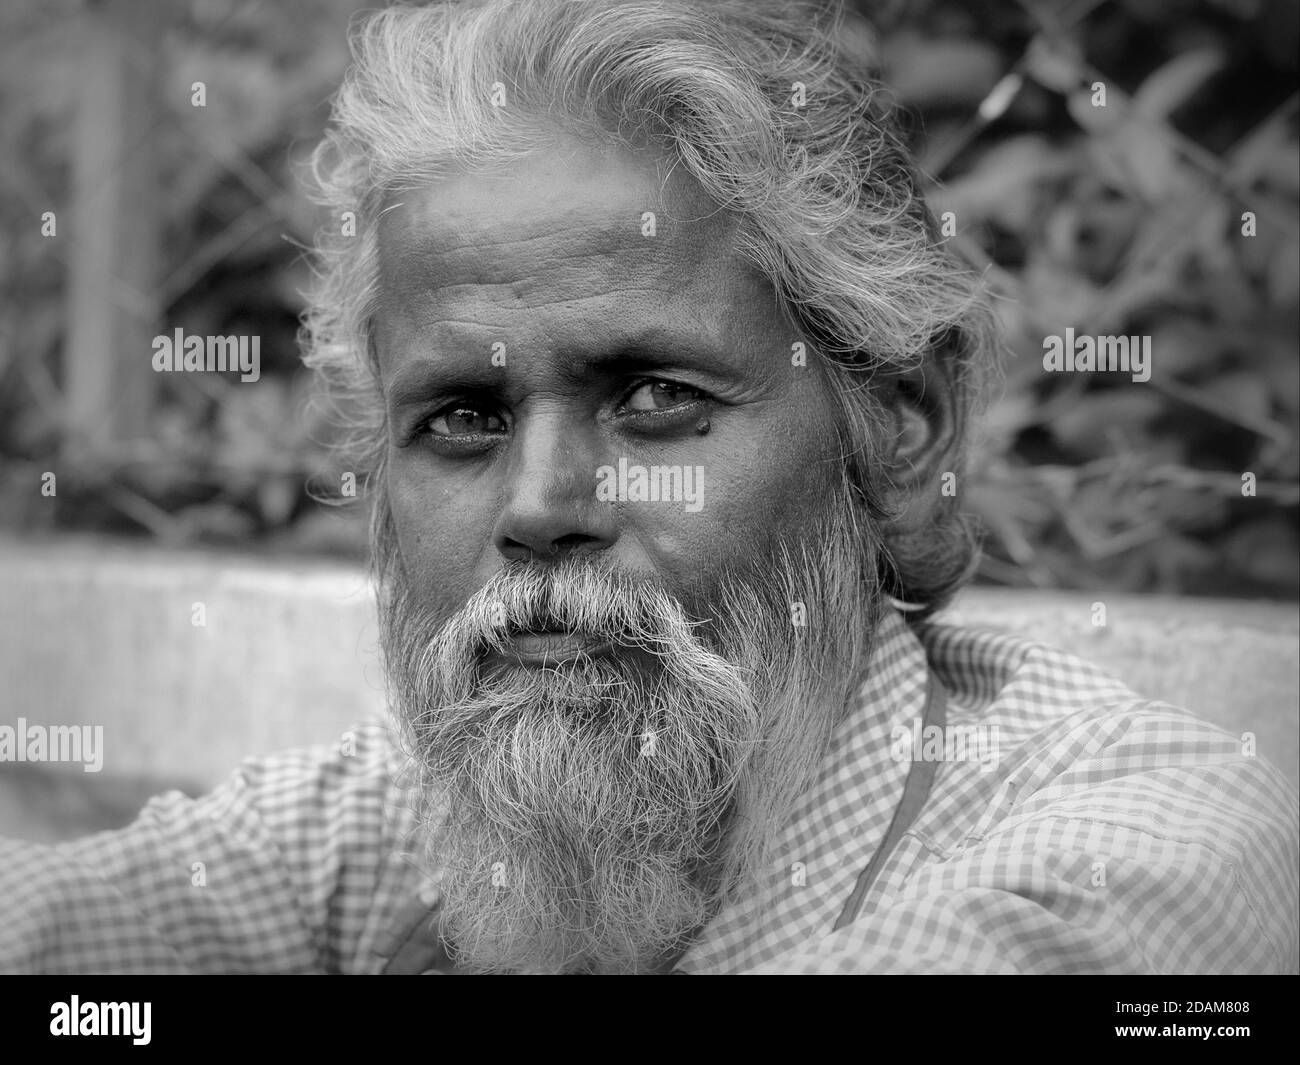 Ouvrier indien d'âge moyen, avec une barbe complète, assis au bord de la route, attend un travail quotidien et pose pour la caméra. Banque D'Images